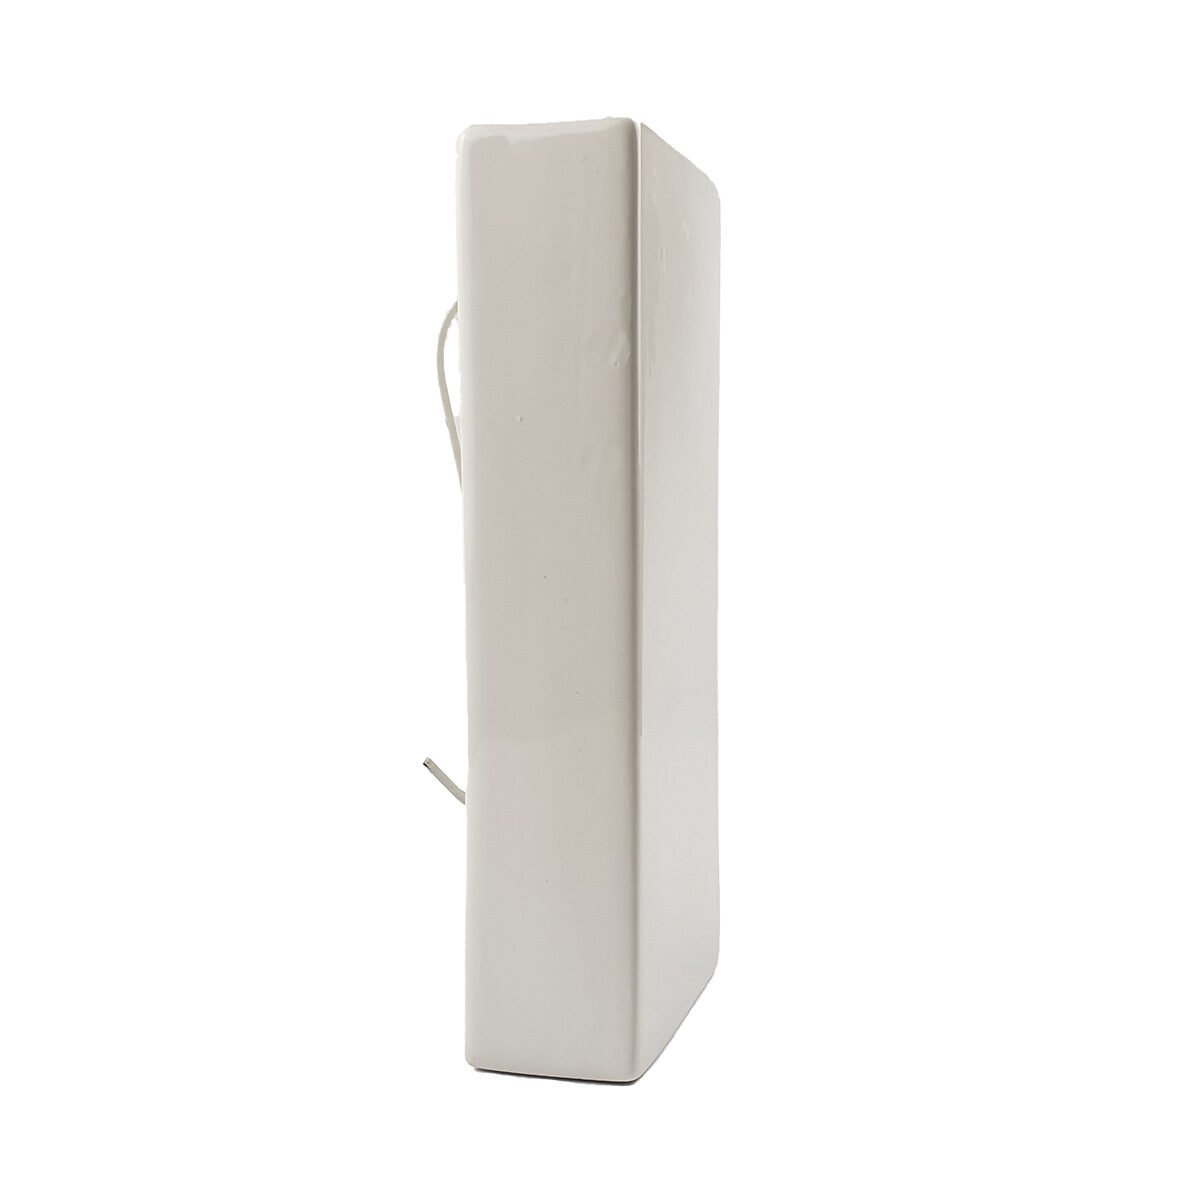 Humidificateur de radiateur en céramique blanc L 8.5 x l 4.0 x H